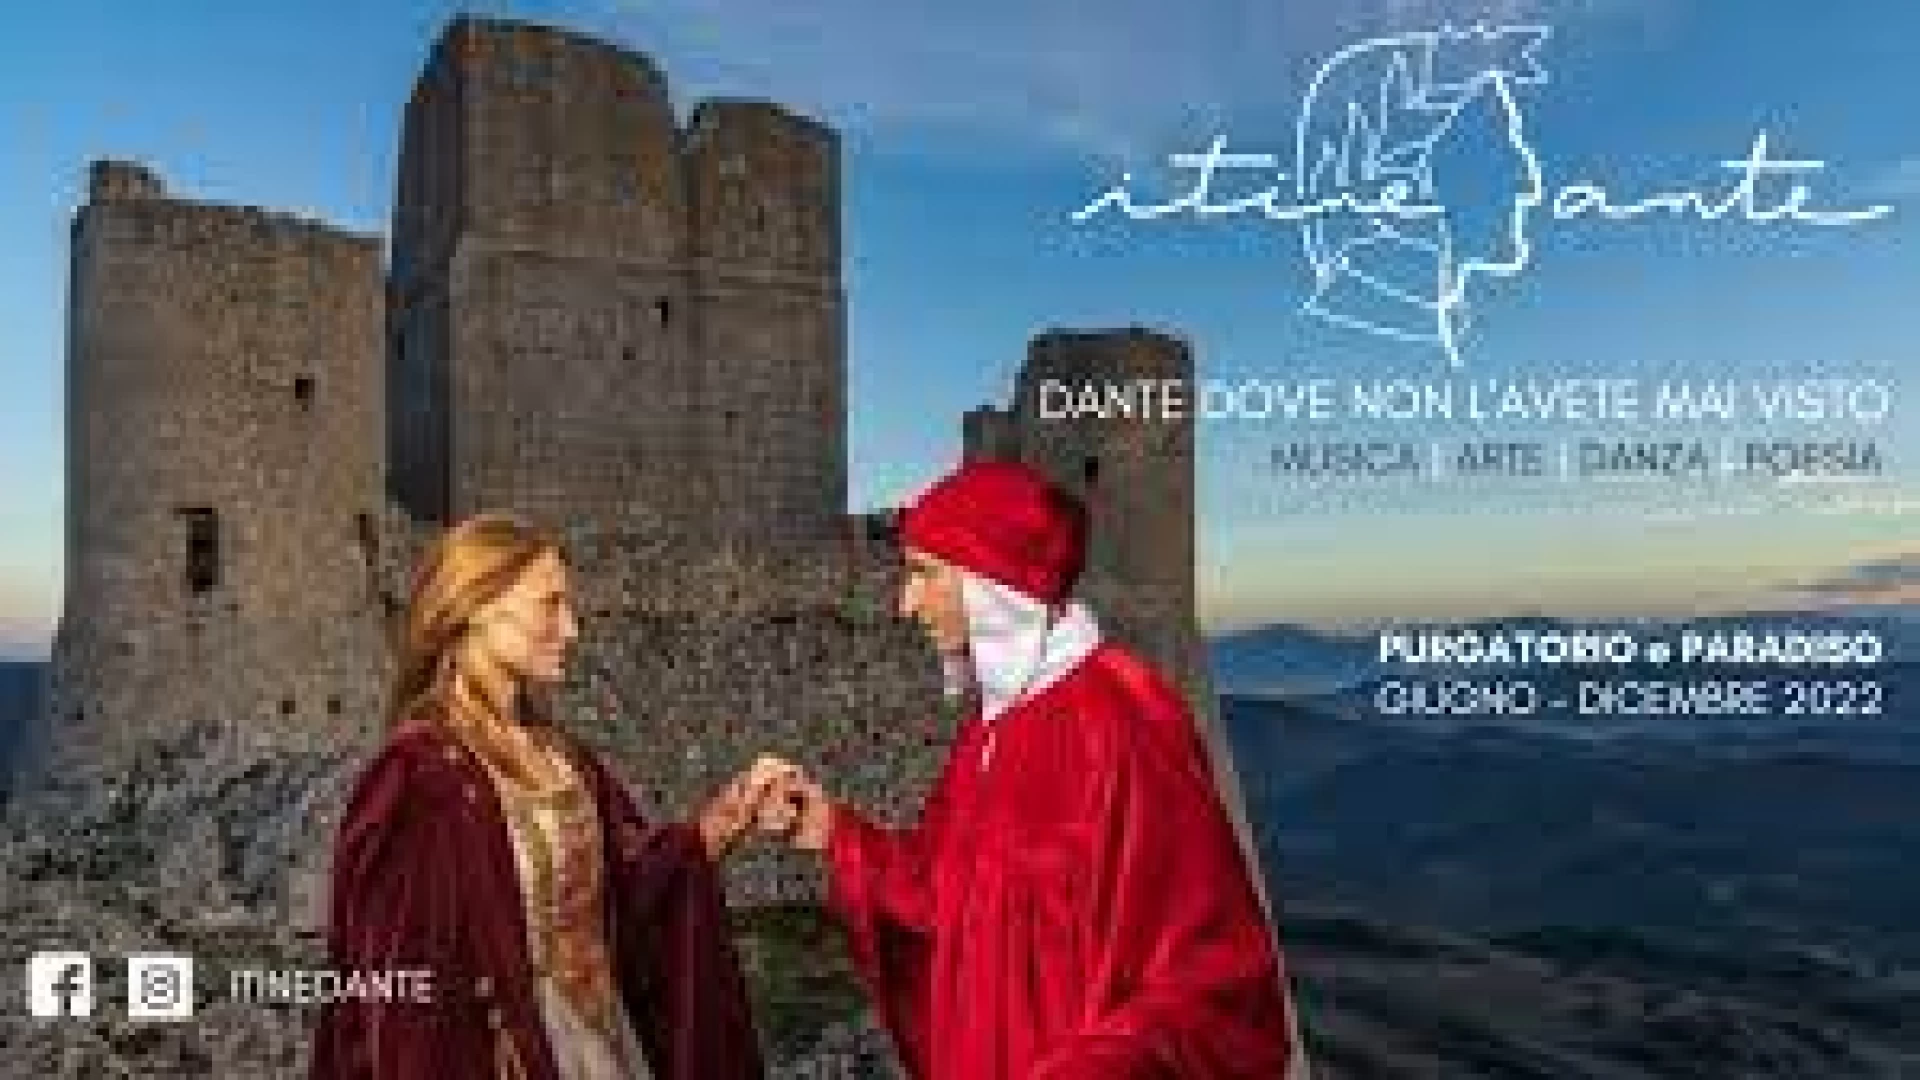 Giornate del Fai, a Castel Di Sangro la tappa di “Itinedante 2022”. Appuntamento domenica 9 ottobre presso il convento della Maddalena.